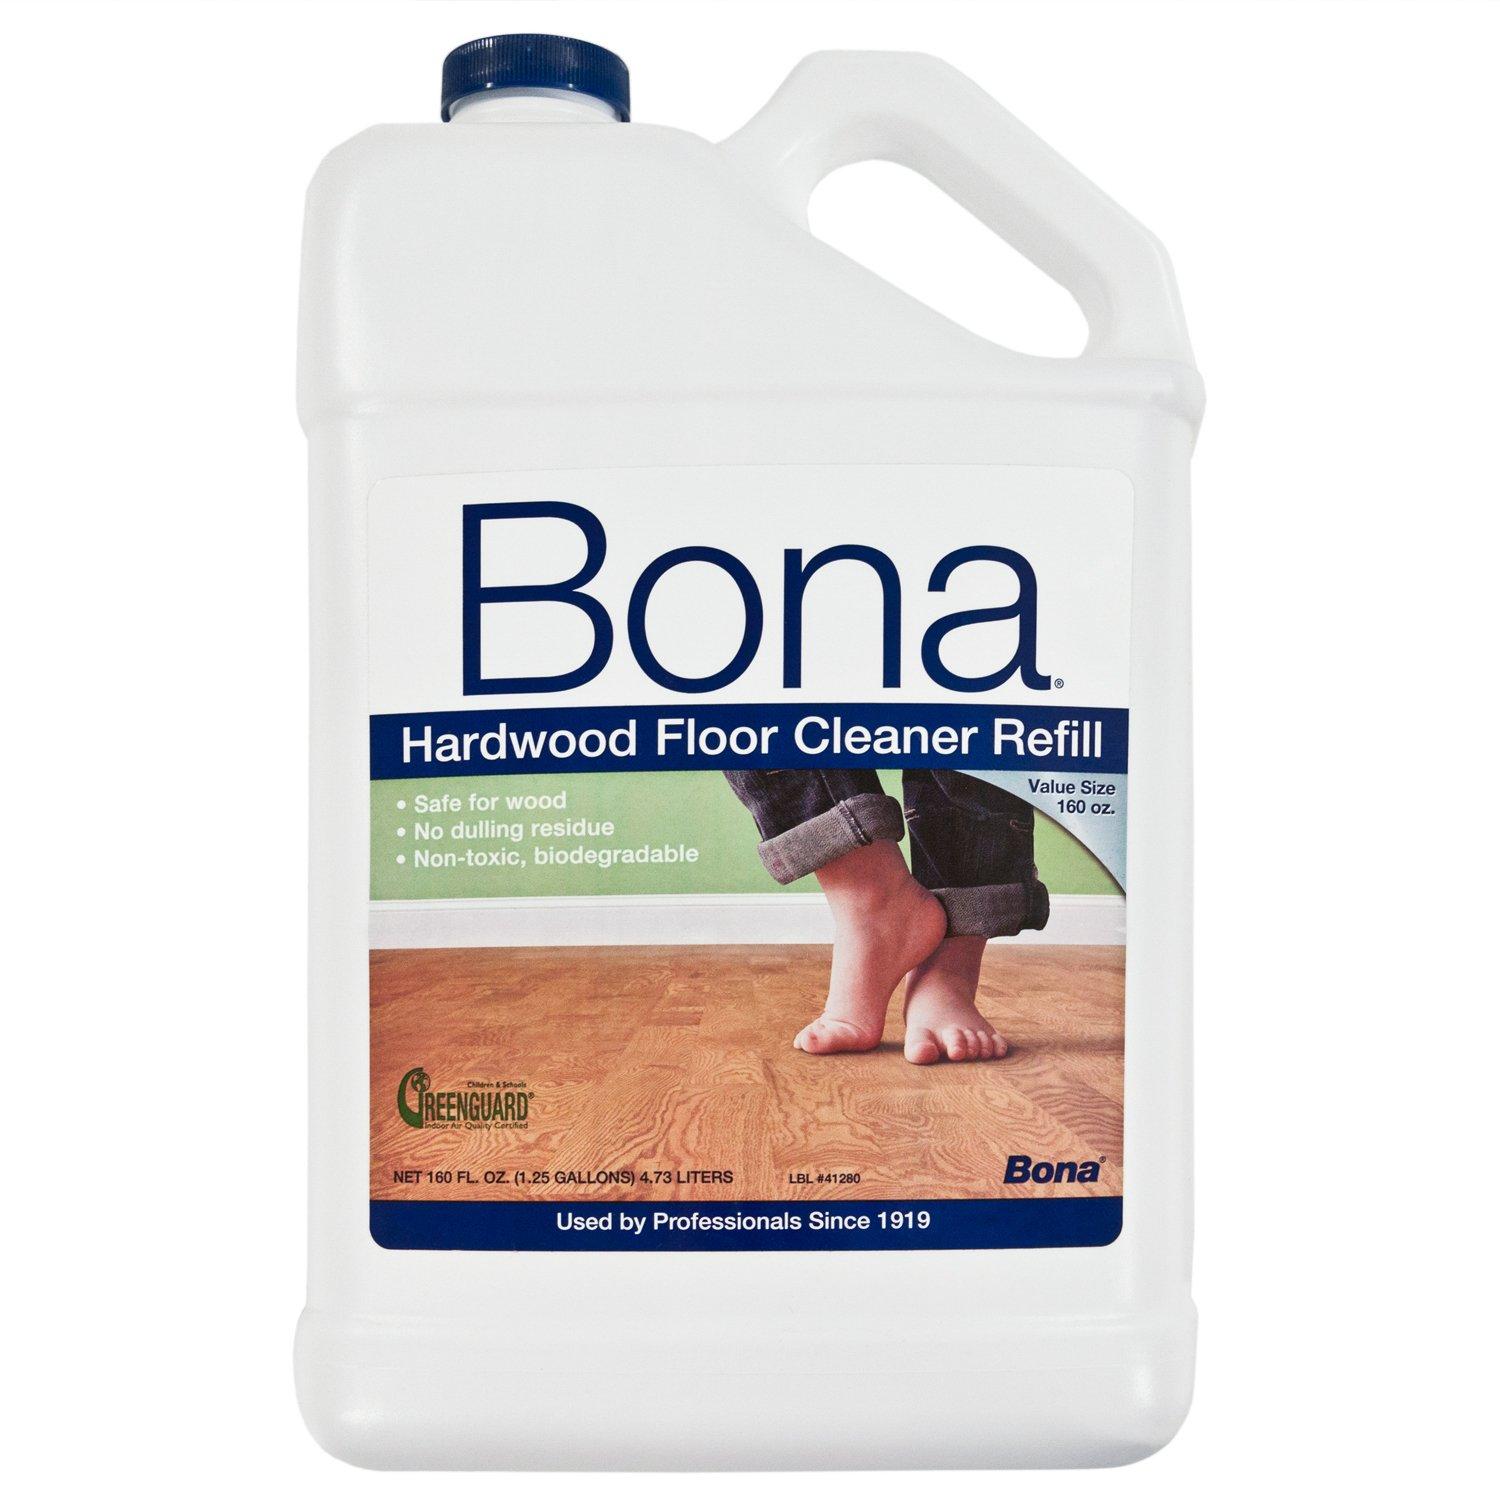 Bona Hardwood Floor Cleaner Refill 160oz 954500221 Floor